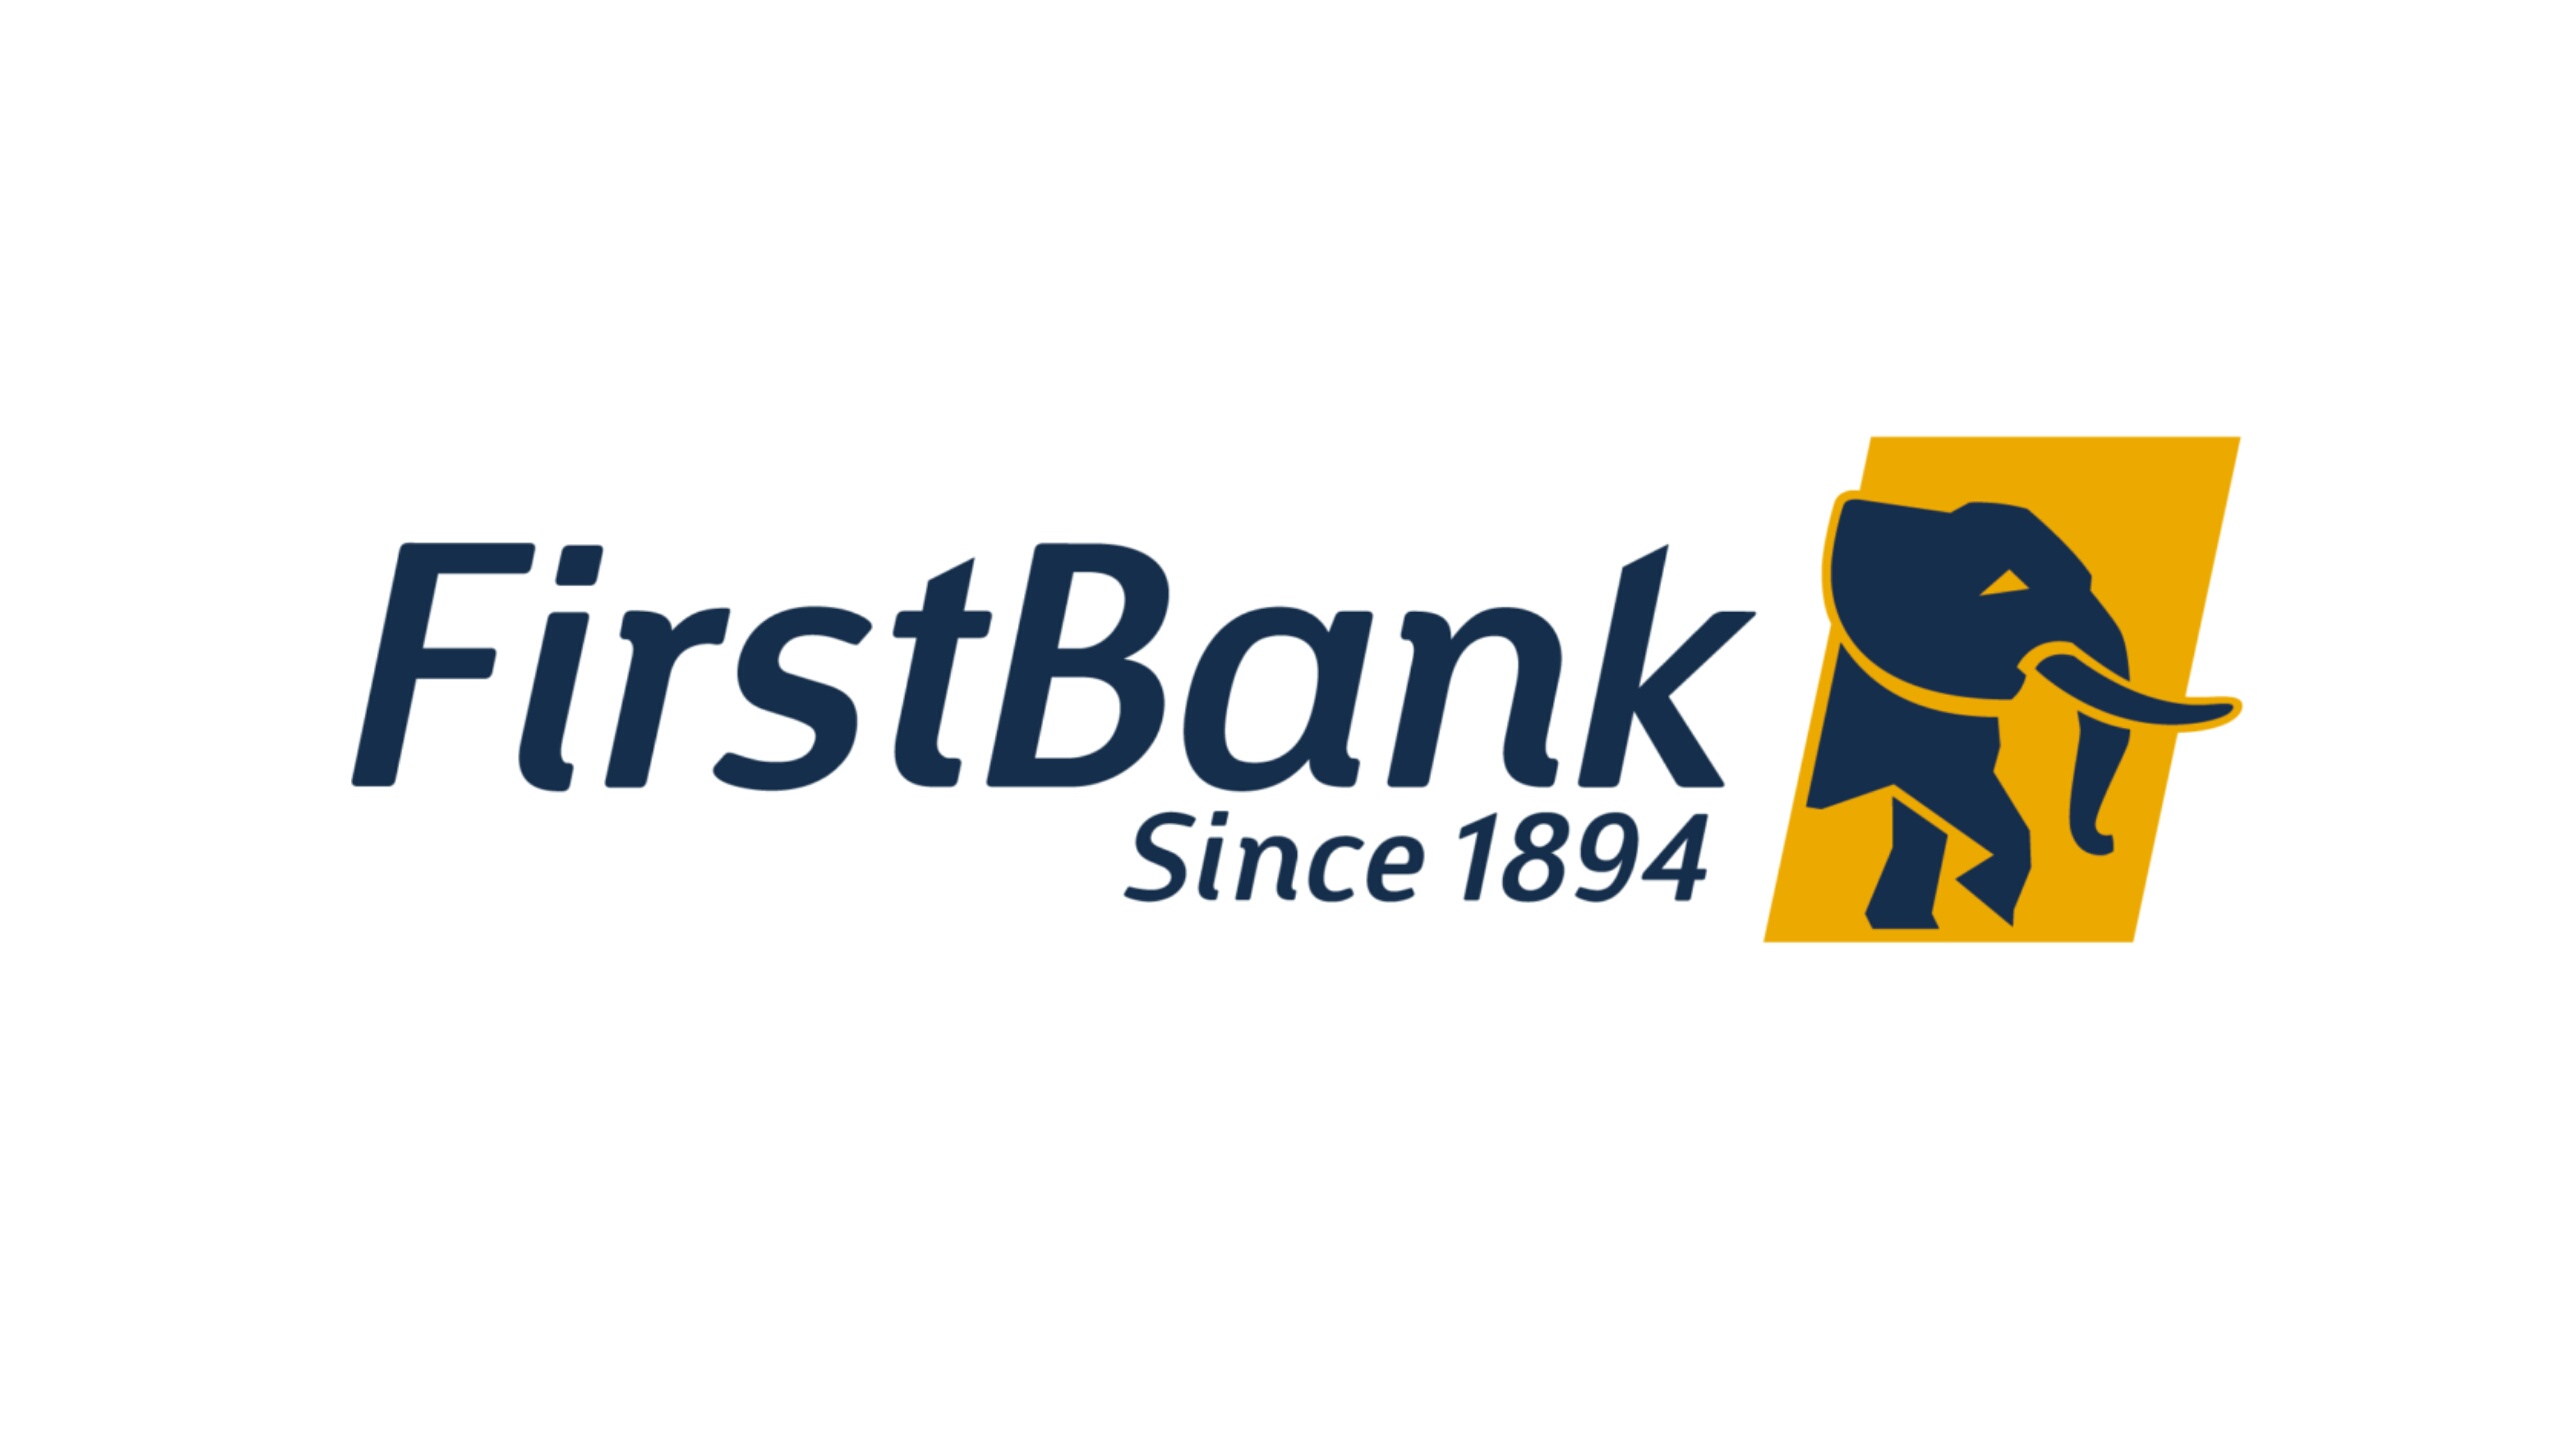 FirstBank Management Associate Programme Francophone 2023